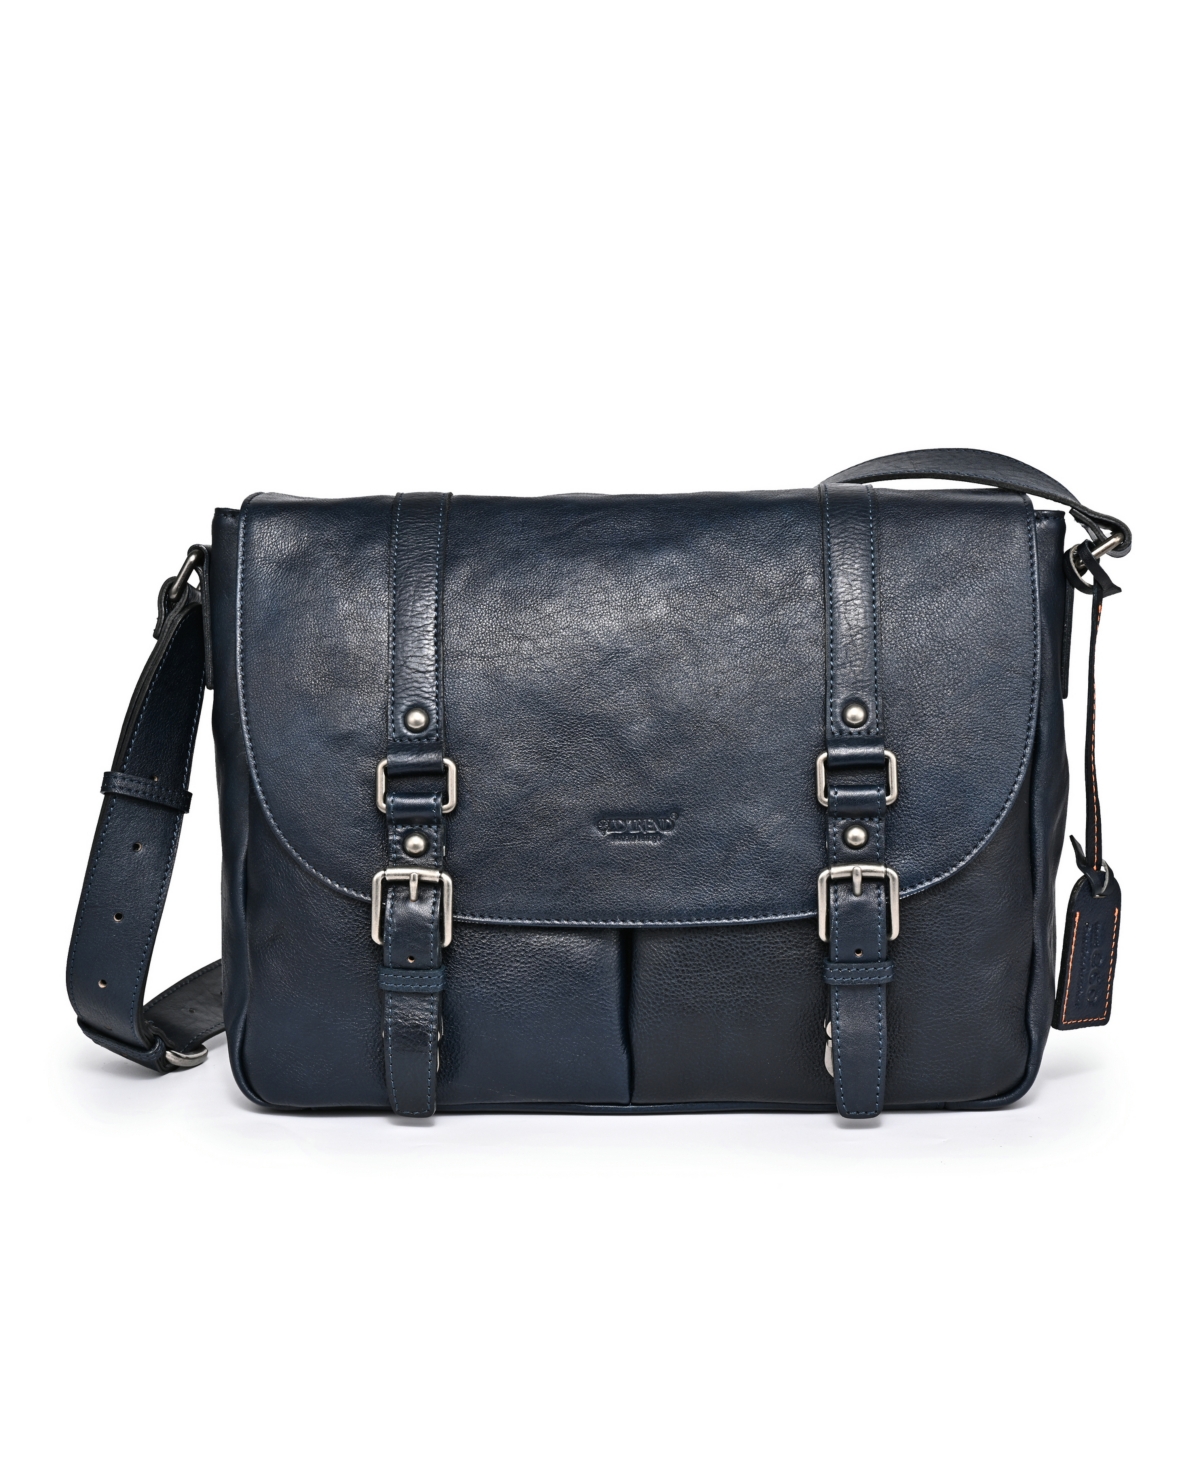 Women's Genuine Leather Moonlight Messenger Bag - Gray